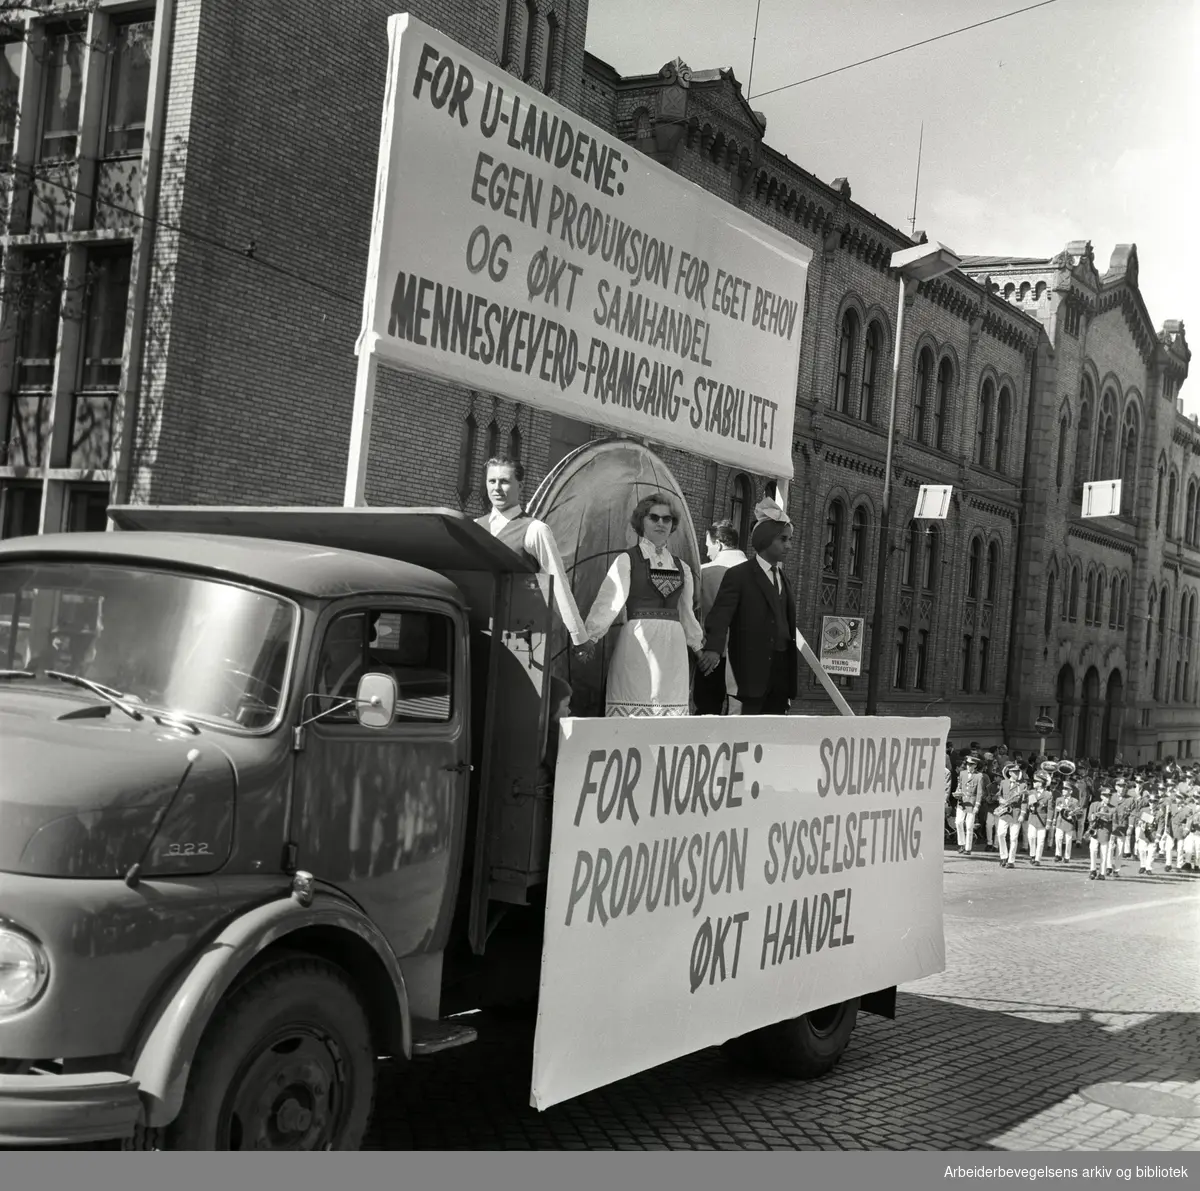 1. mai 1964 i Oslo.Demonstrasjonstoget i Karl Johans gate.Parole: For U-landene:.Egen produksjon for eget behov.og økt samhandel.menneskevern - framgang - stabilitet.Parole: For Norge: Solidaritet produksjon økt handel